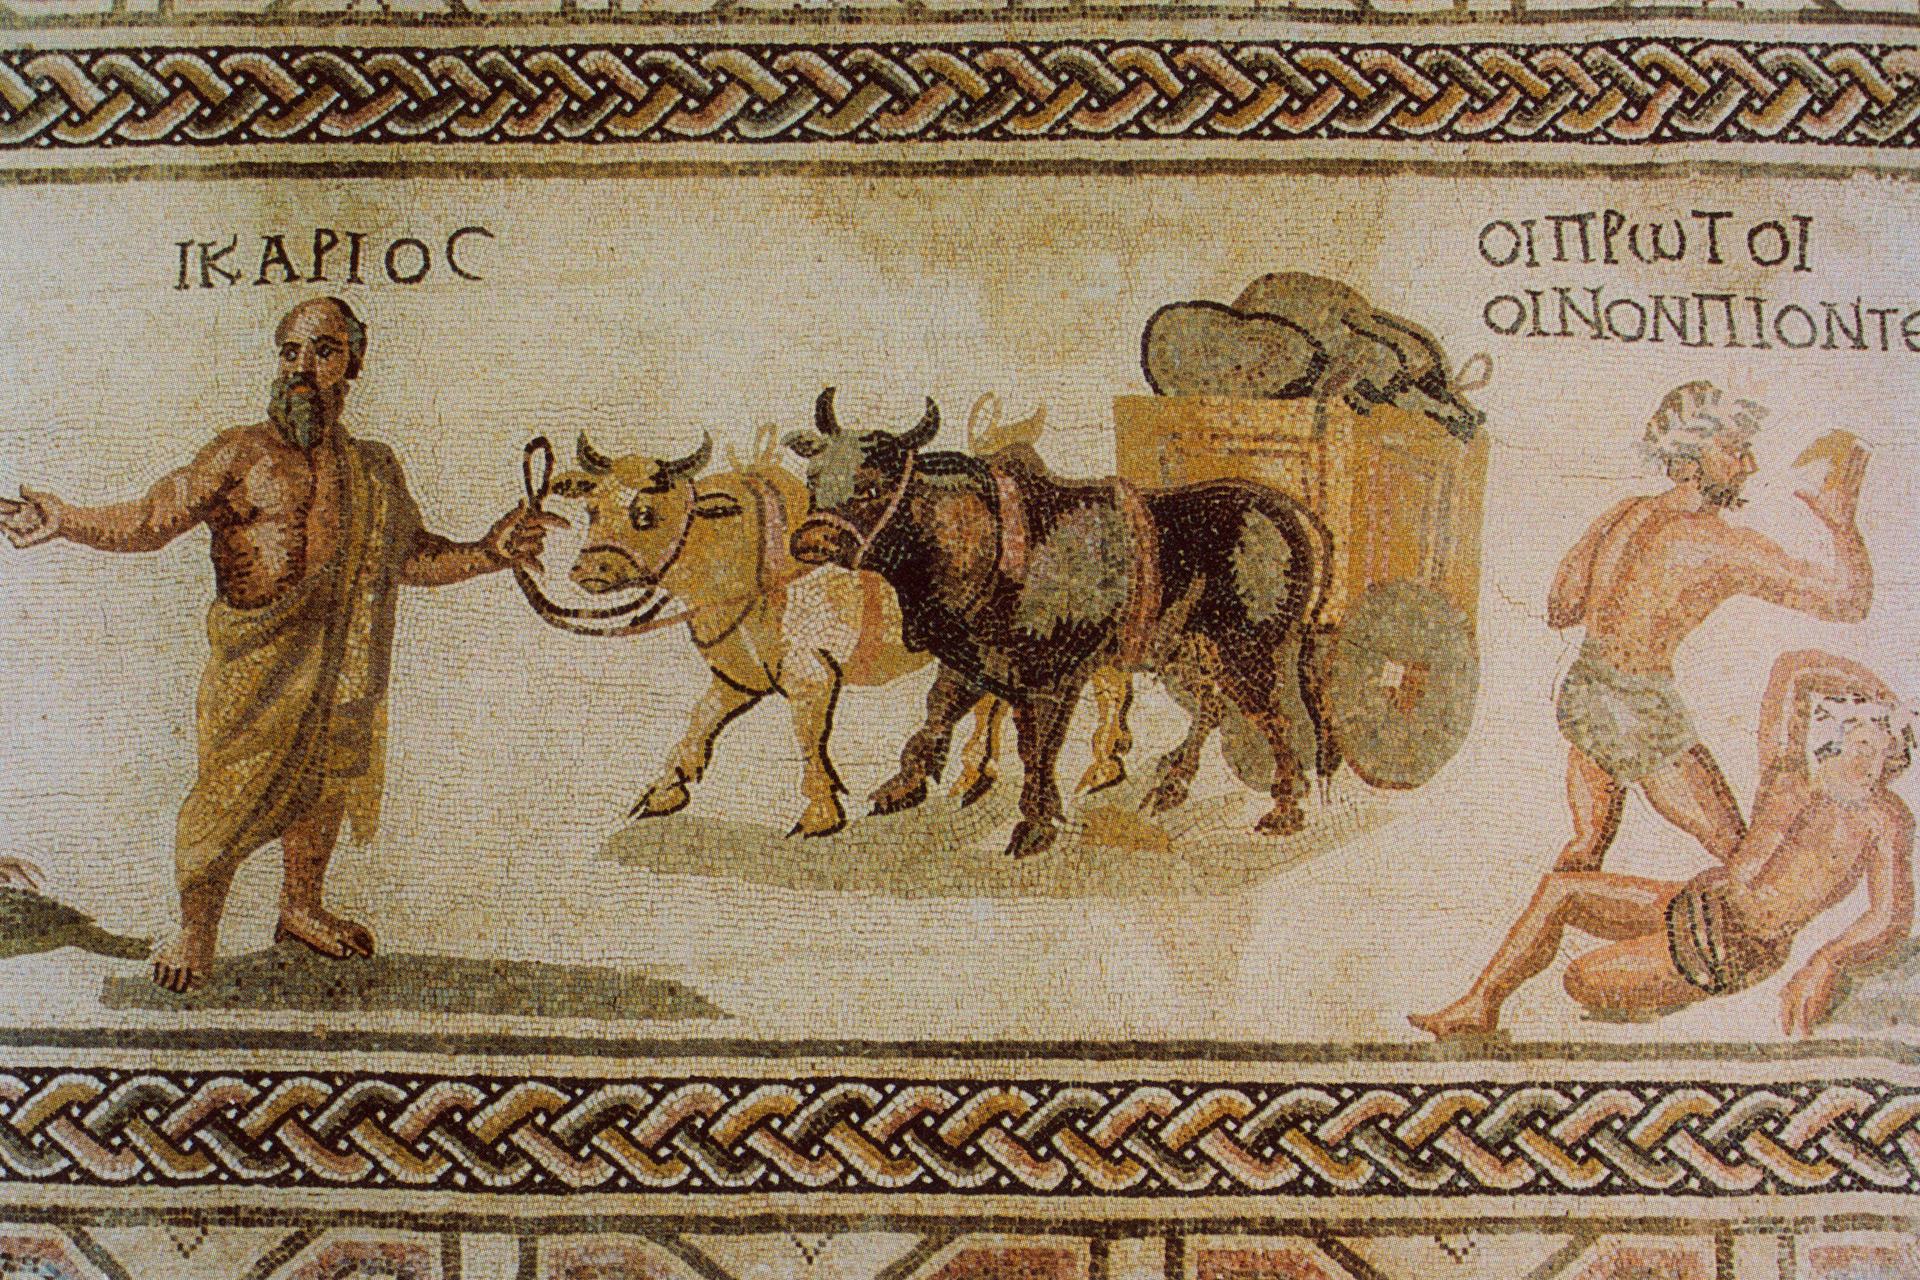 Mosaic of Icarius